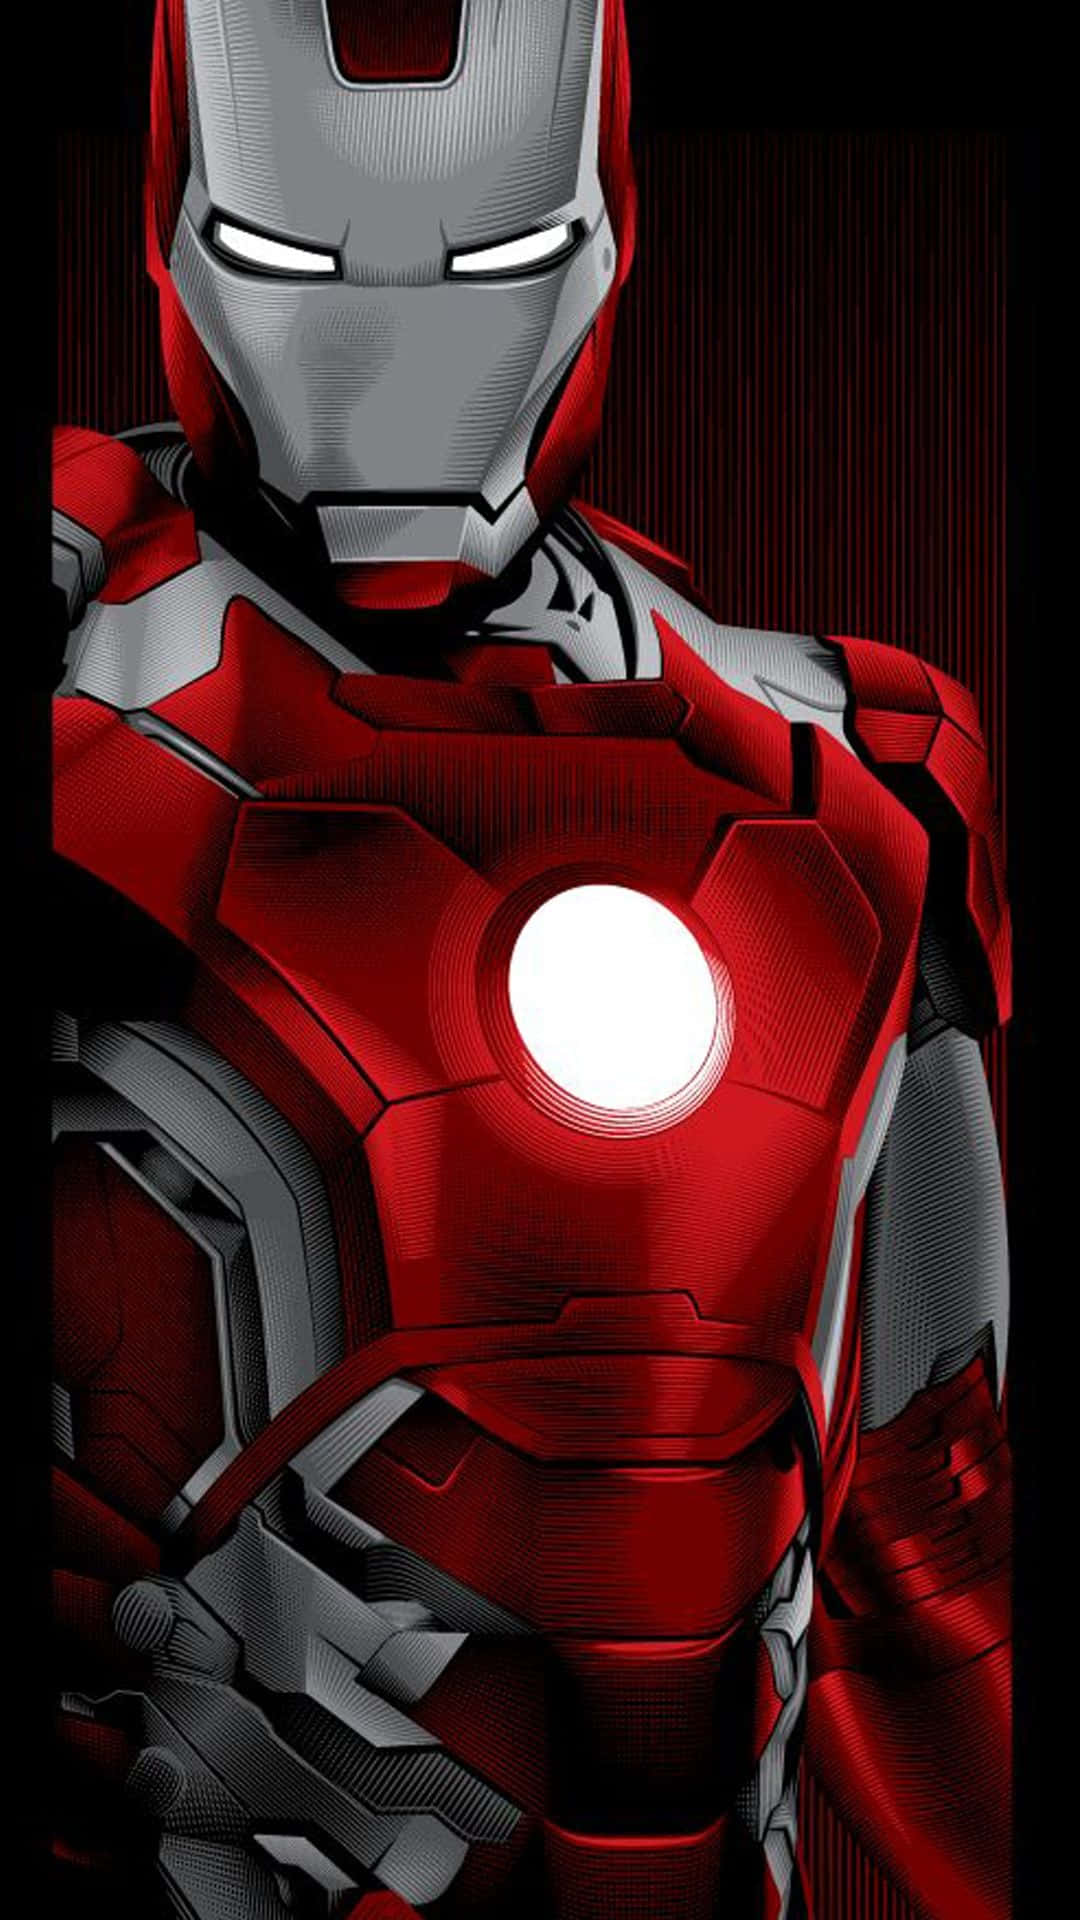 Equípatecon La Edición Iron Man Del Iphone X Y Lleva Tu Tecnología Al Siguiente Nivel. Fondo de pantalla